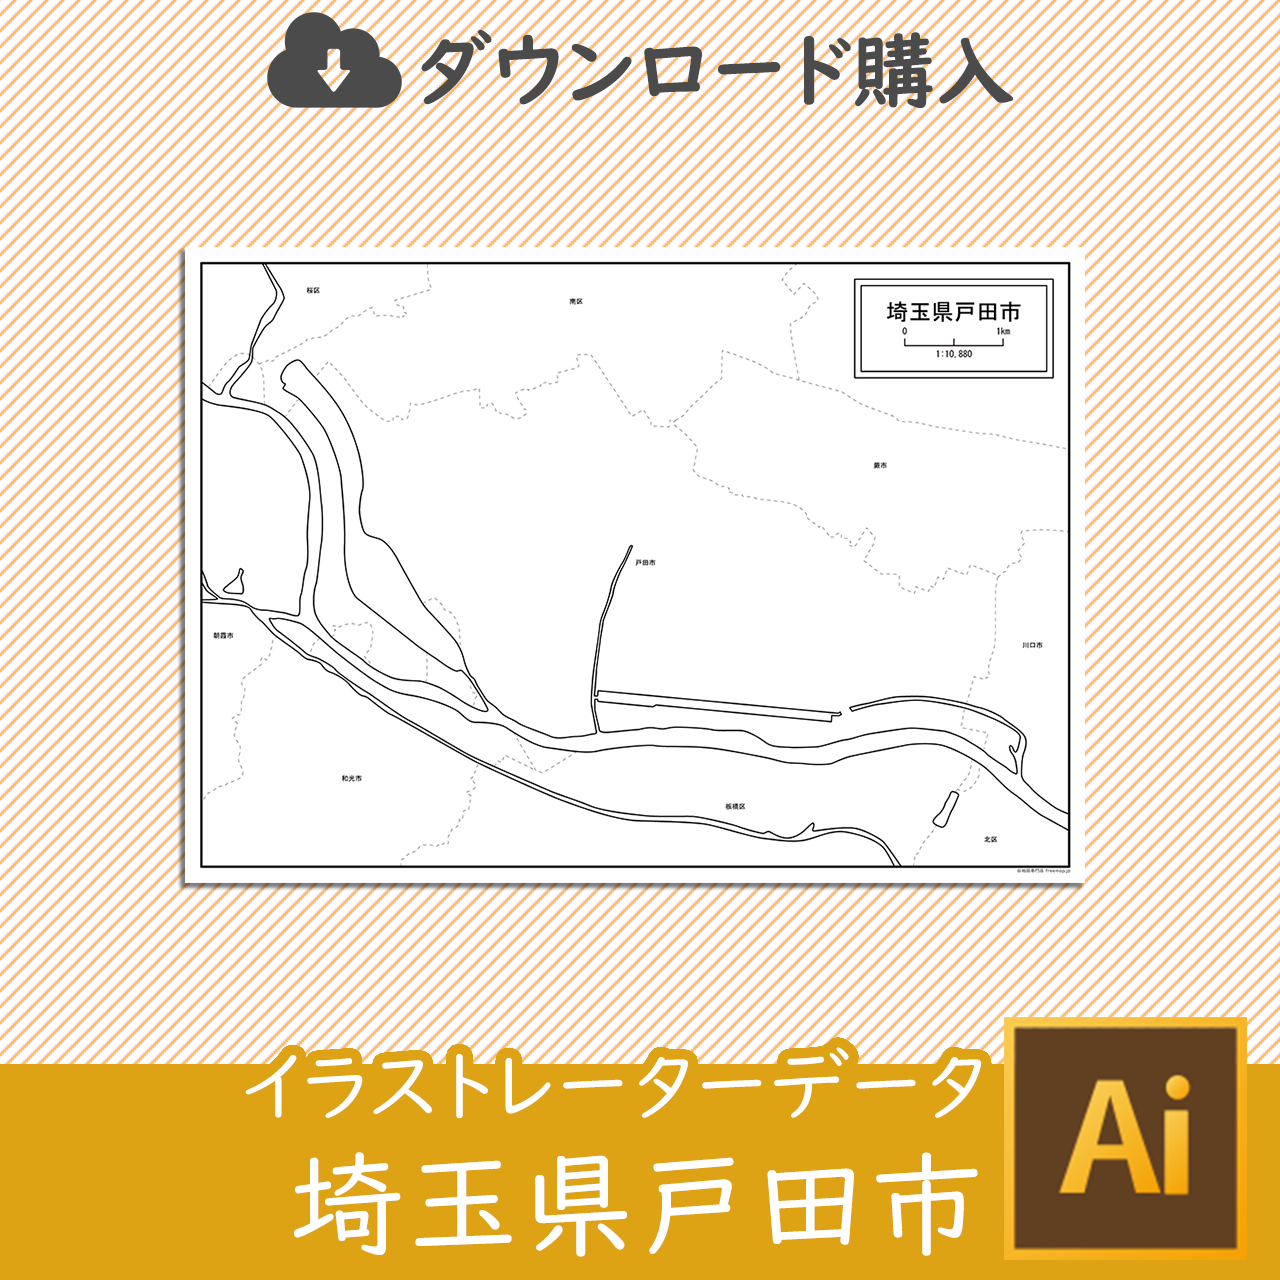 戸田市のaiデータのサムネイル画像